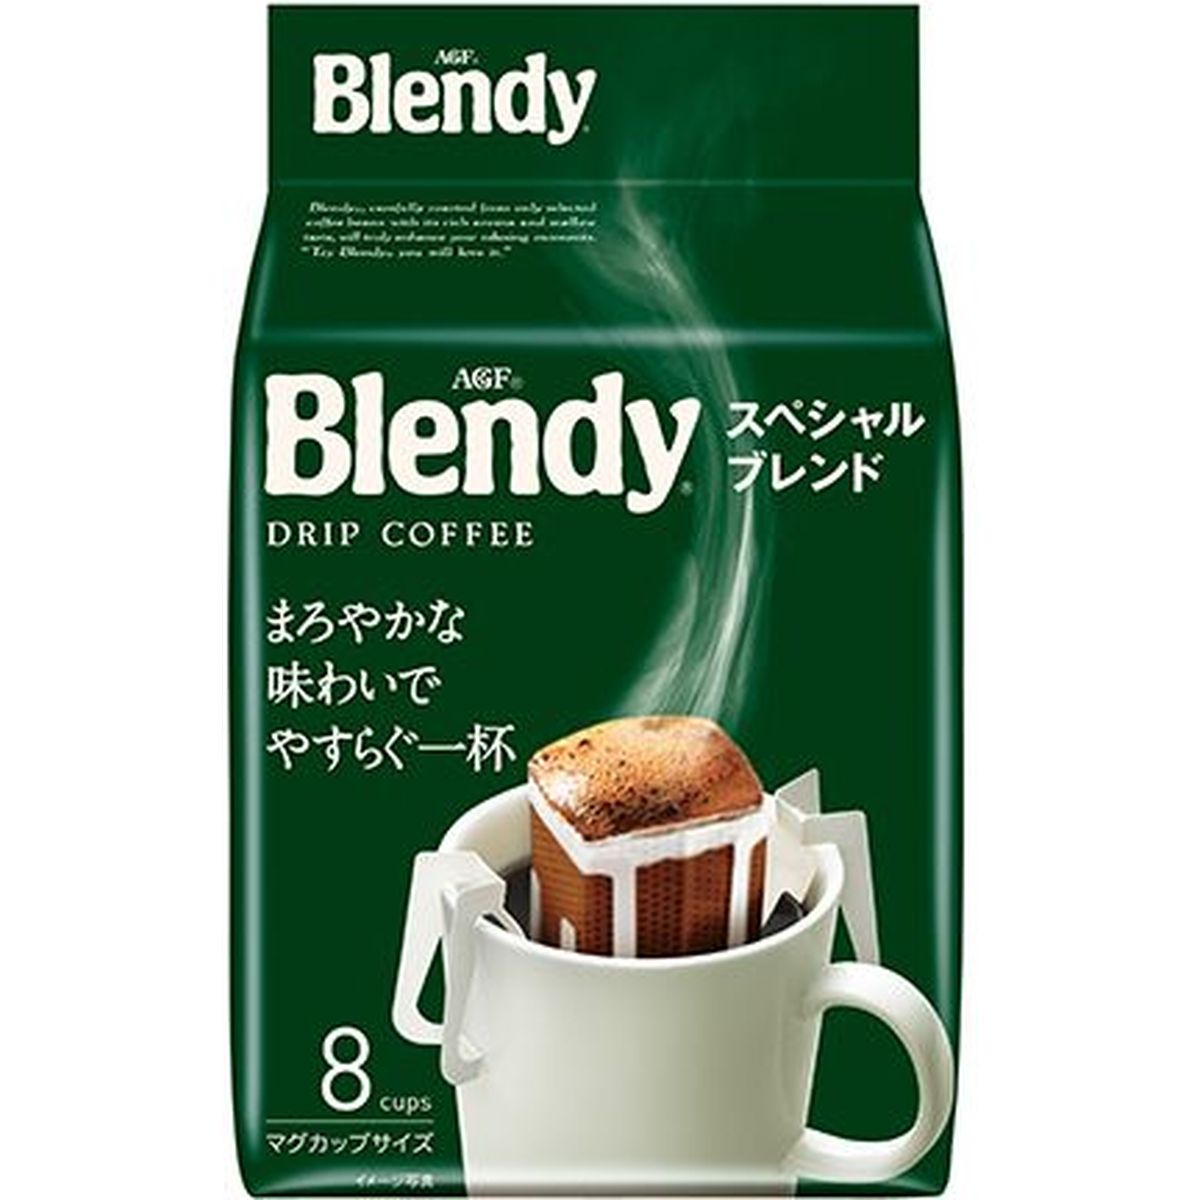 【6個入リ】AGF ブレンディスペシャルブレンド ドリップパック マロヤカ味ワイ 袋 8袋